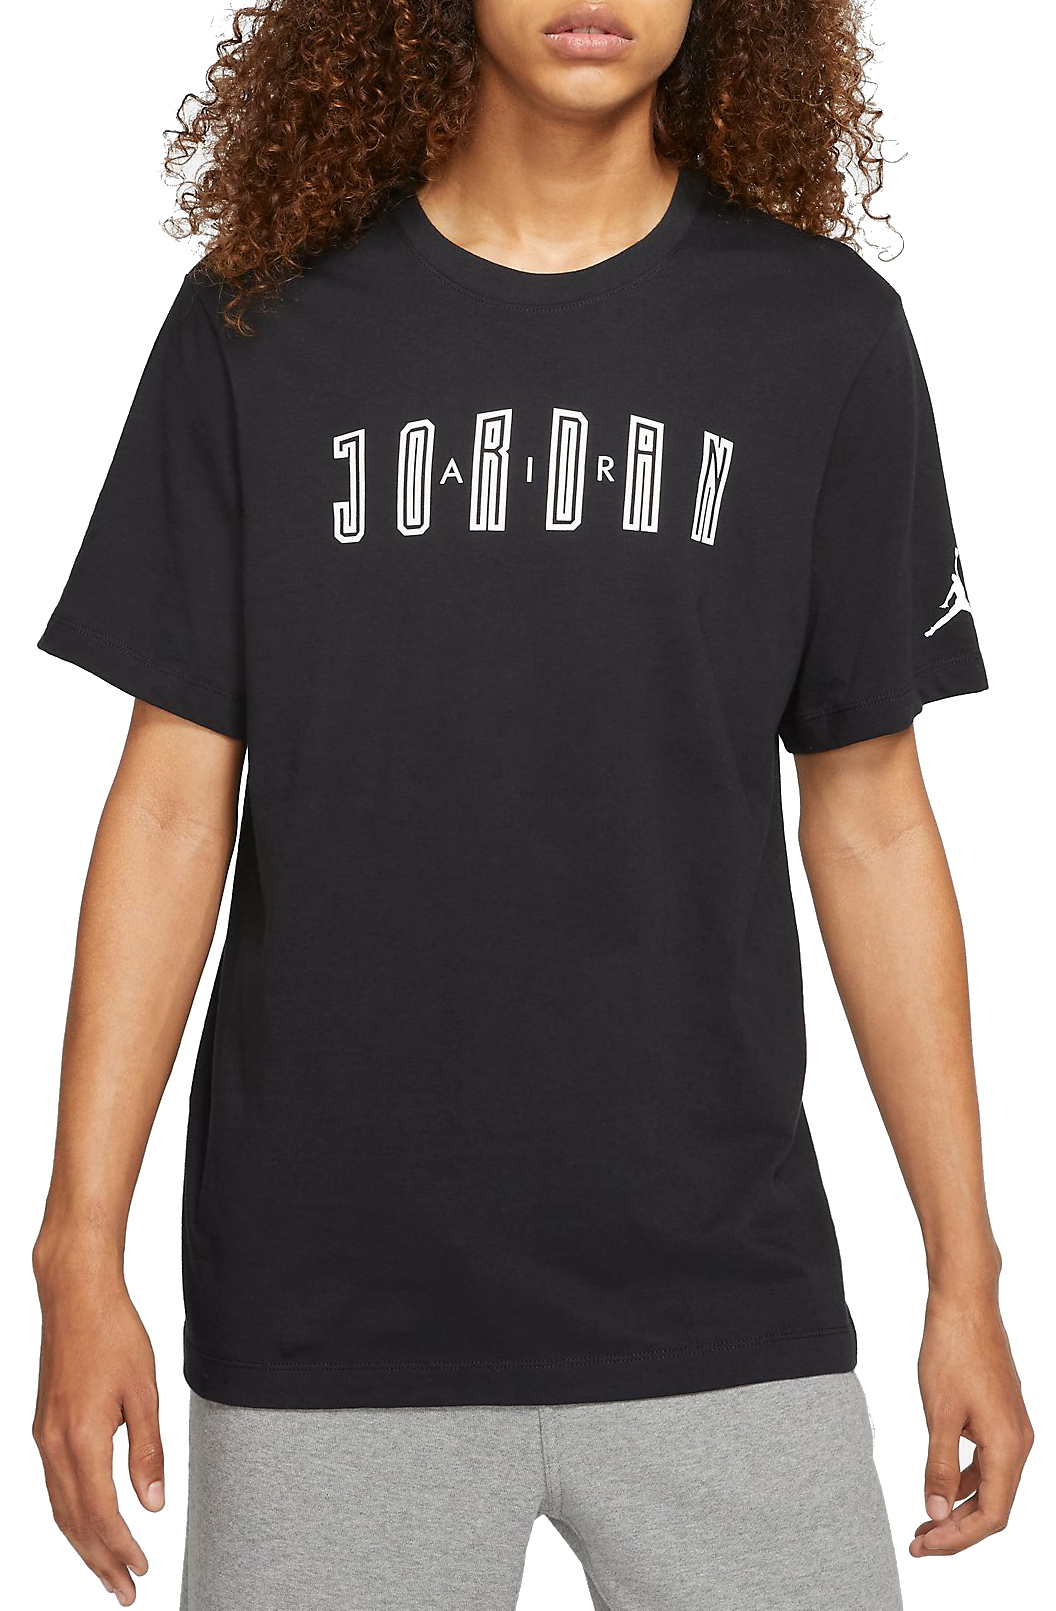 T-shirt Jordan Sport DNA